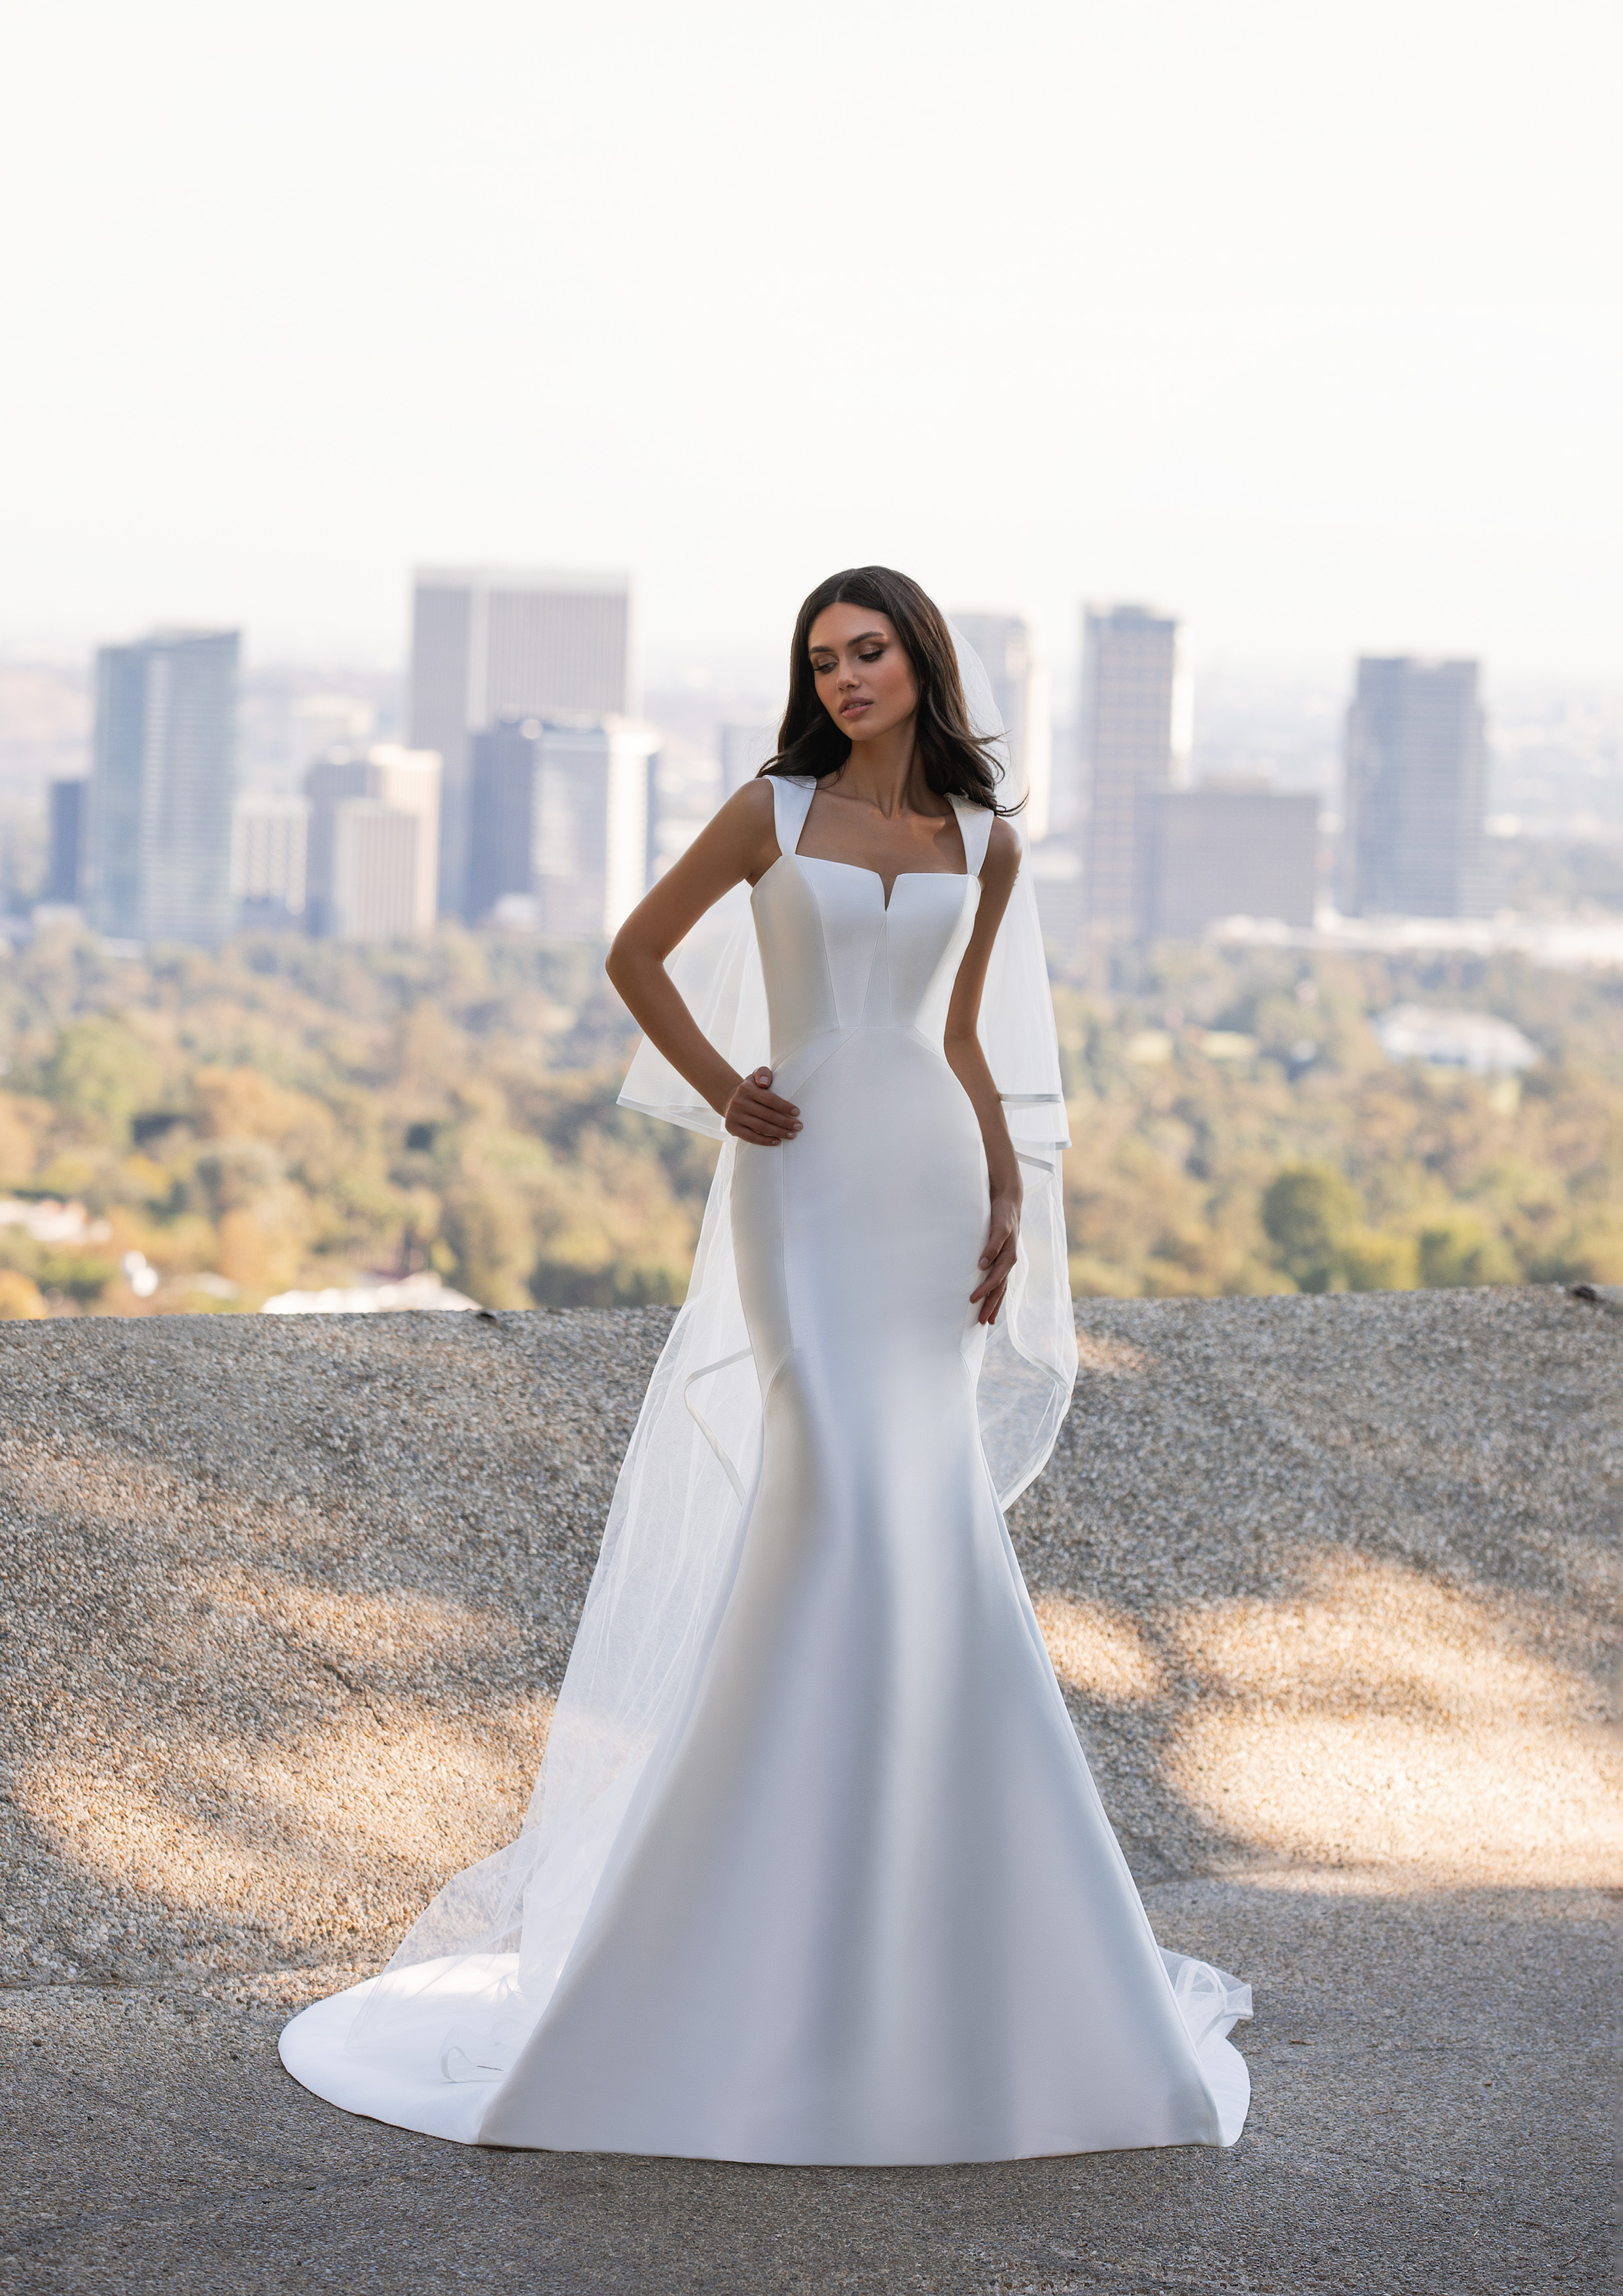 Vestido de noiva modelo Hutton da coleção Pronovias 2021 Cruise Collection